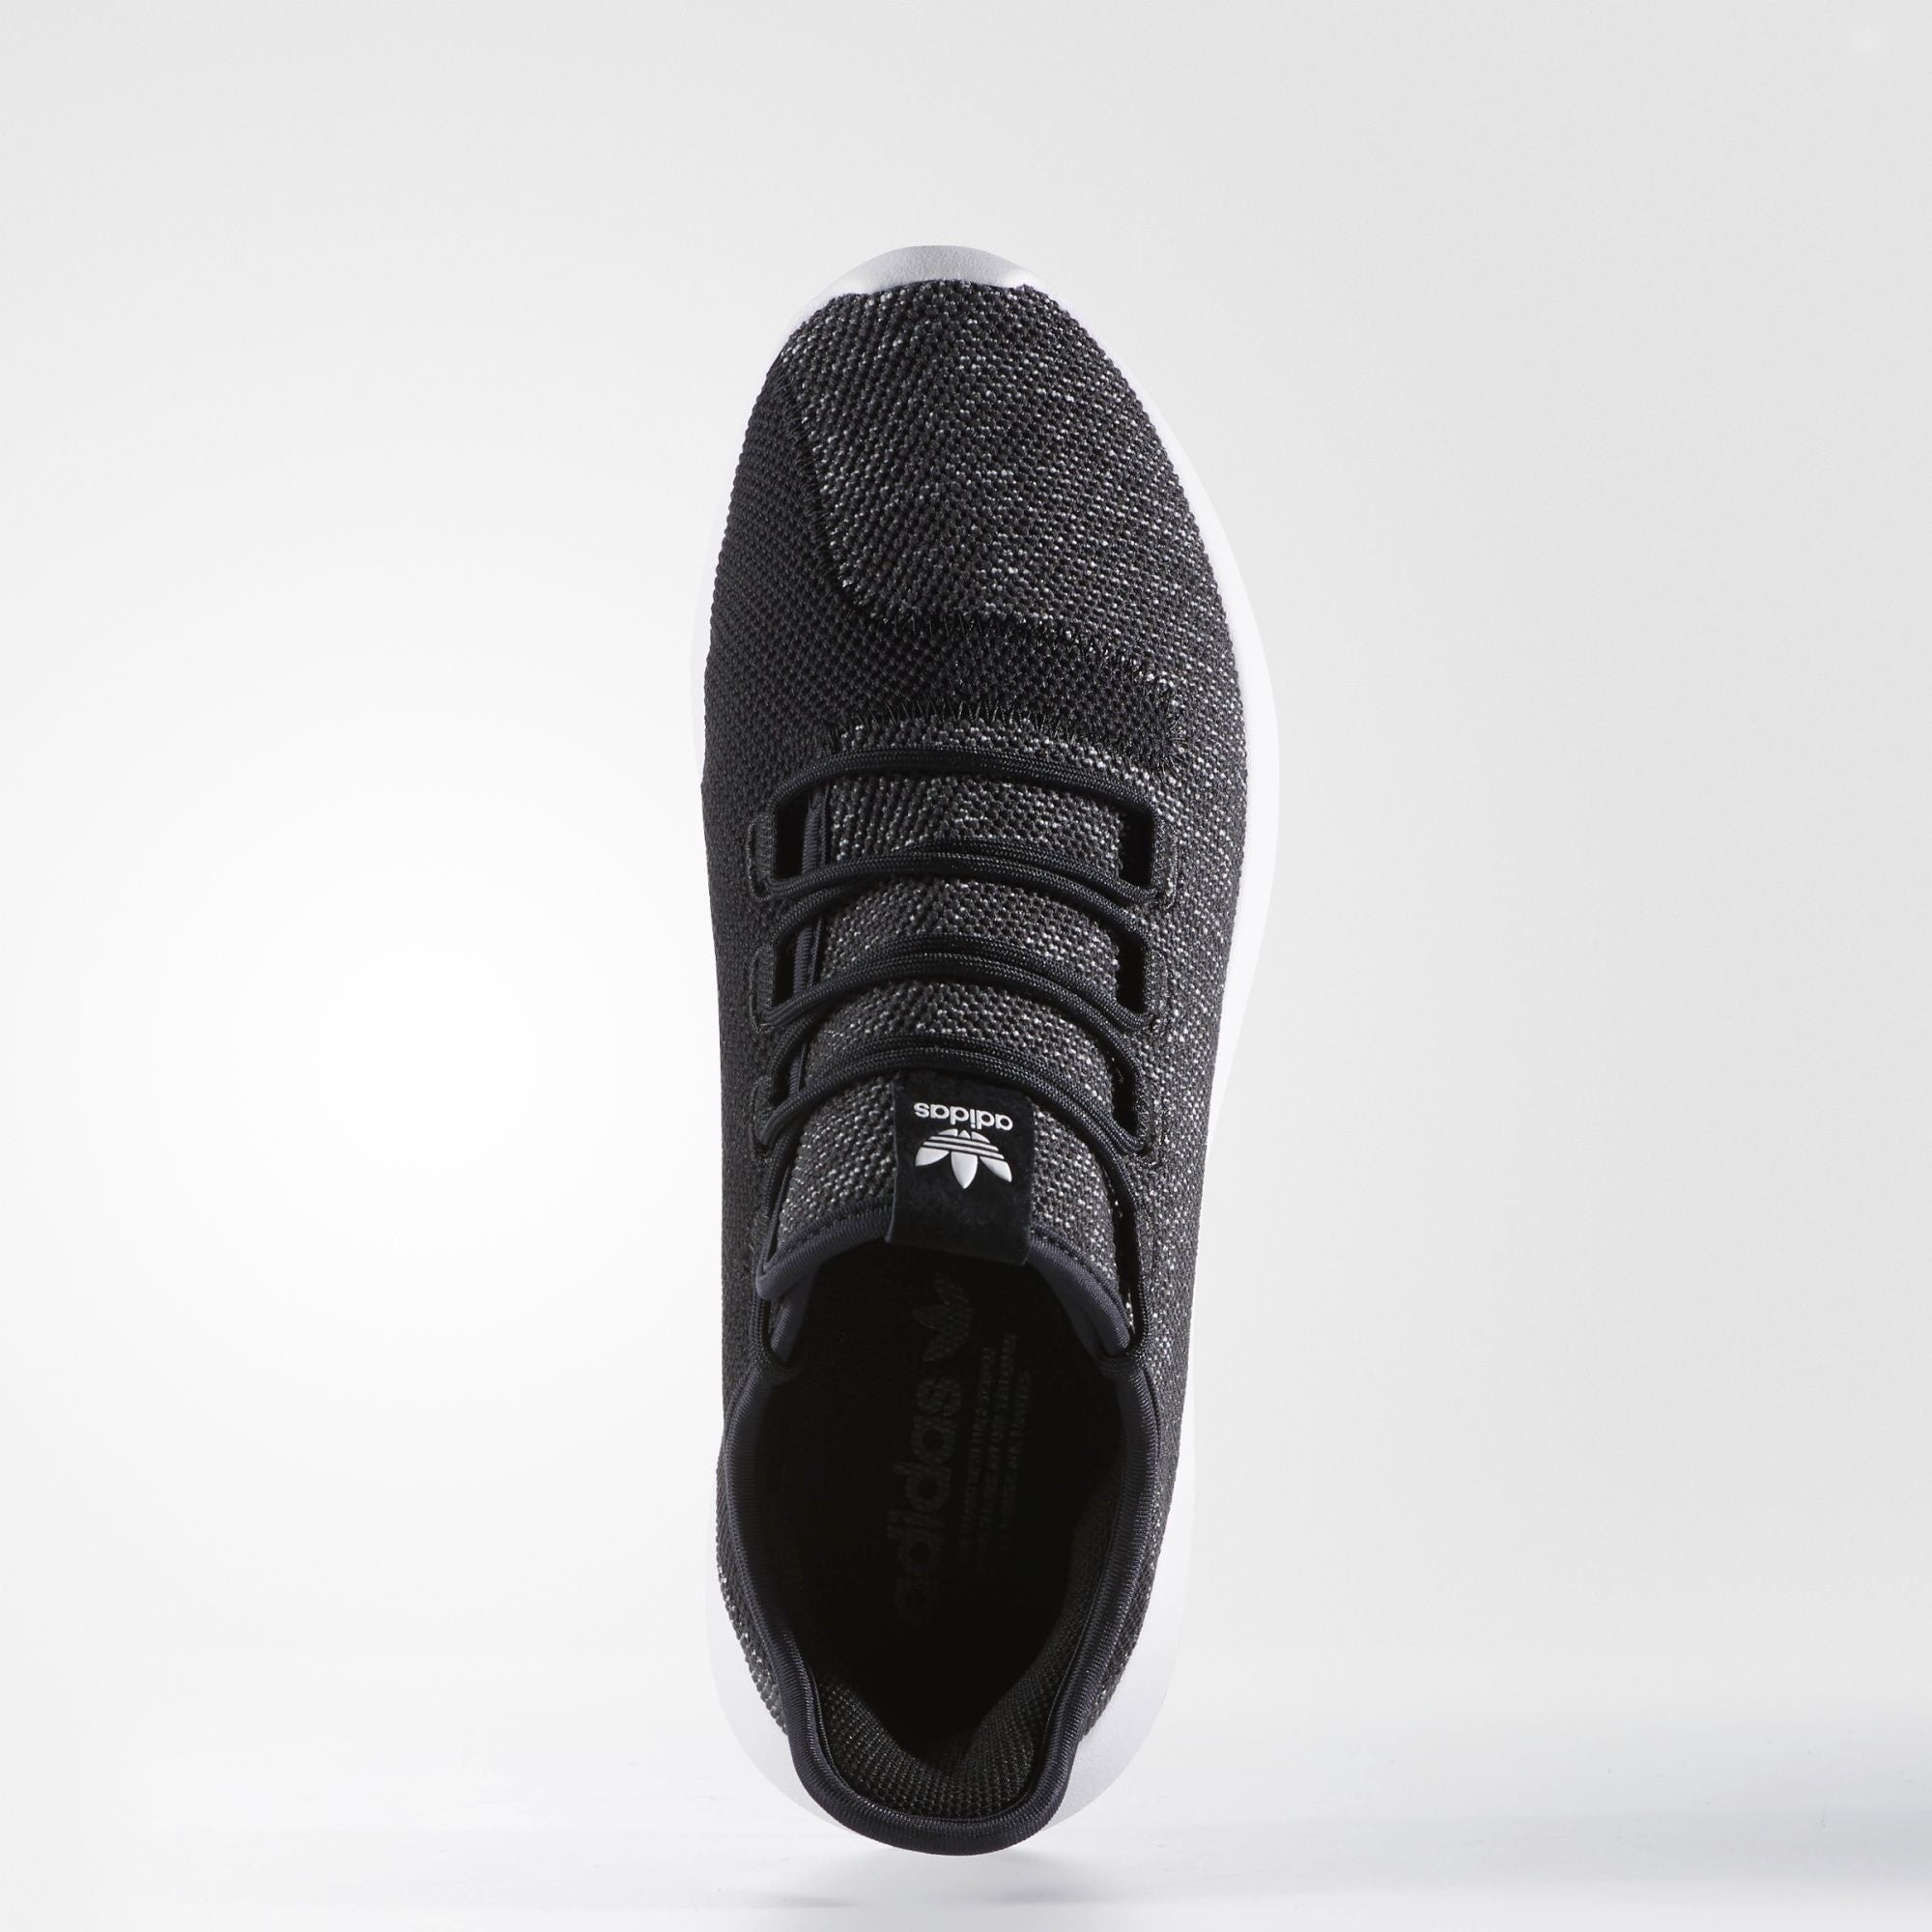 adidas tubular shadow utility black